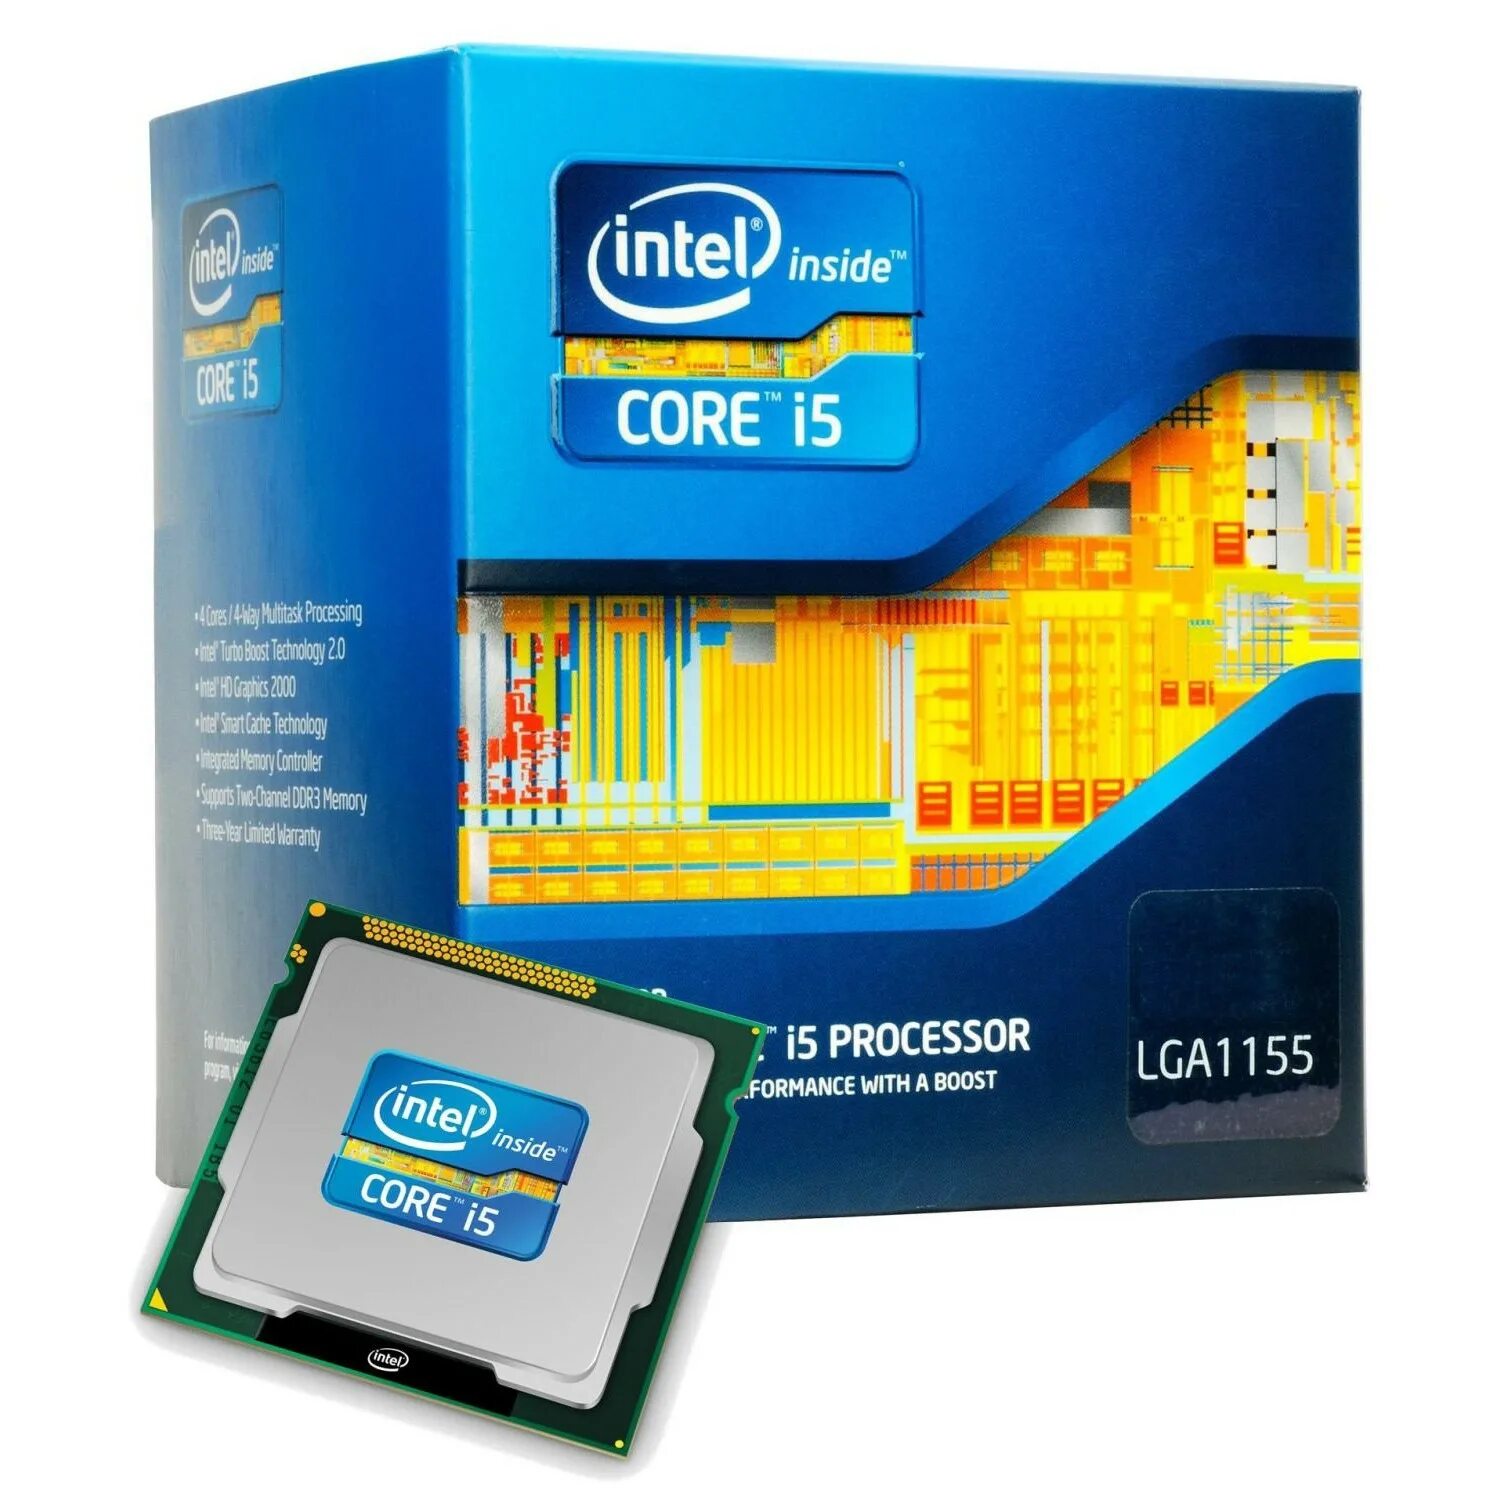 Интел 3470. Процессор Интел i5 3470. Intel® Core™ i5-3470. Core i5-3570k. Intel Core i5 LGA.